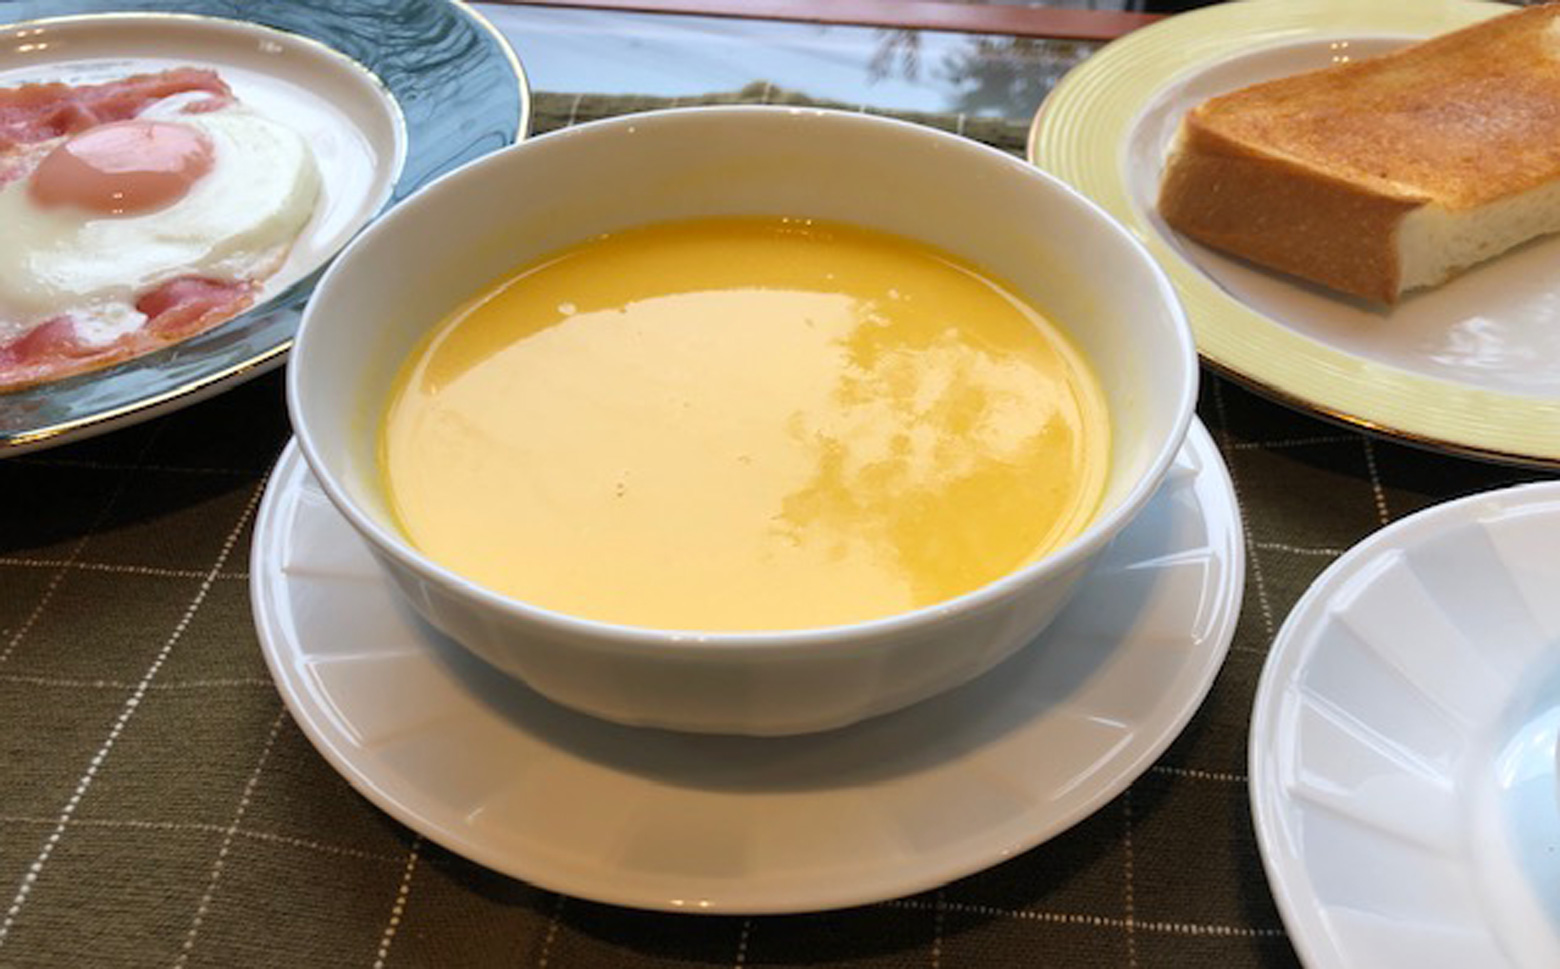 M-AD40.【野菜のおいしさそのままに】ポタージュ工房　スープ　3種類×2食